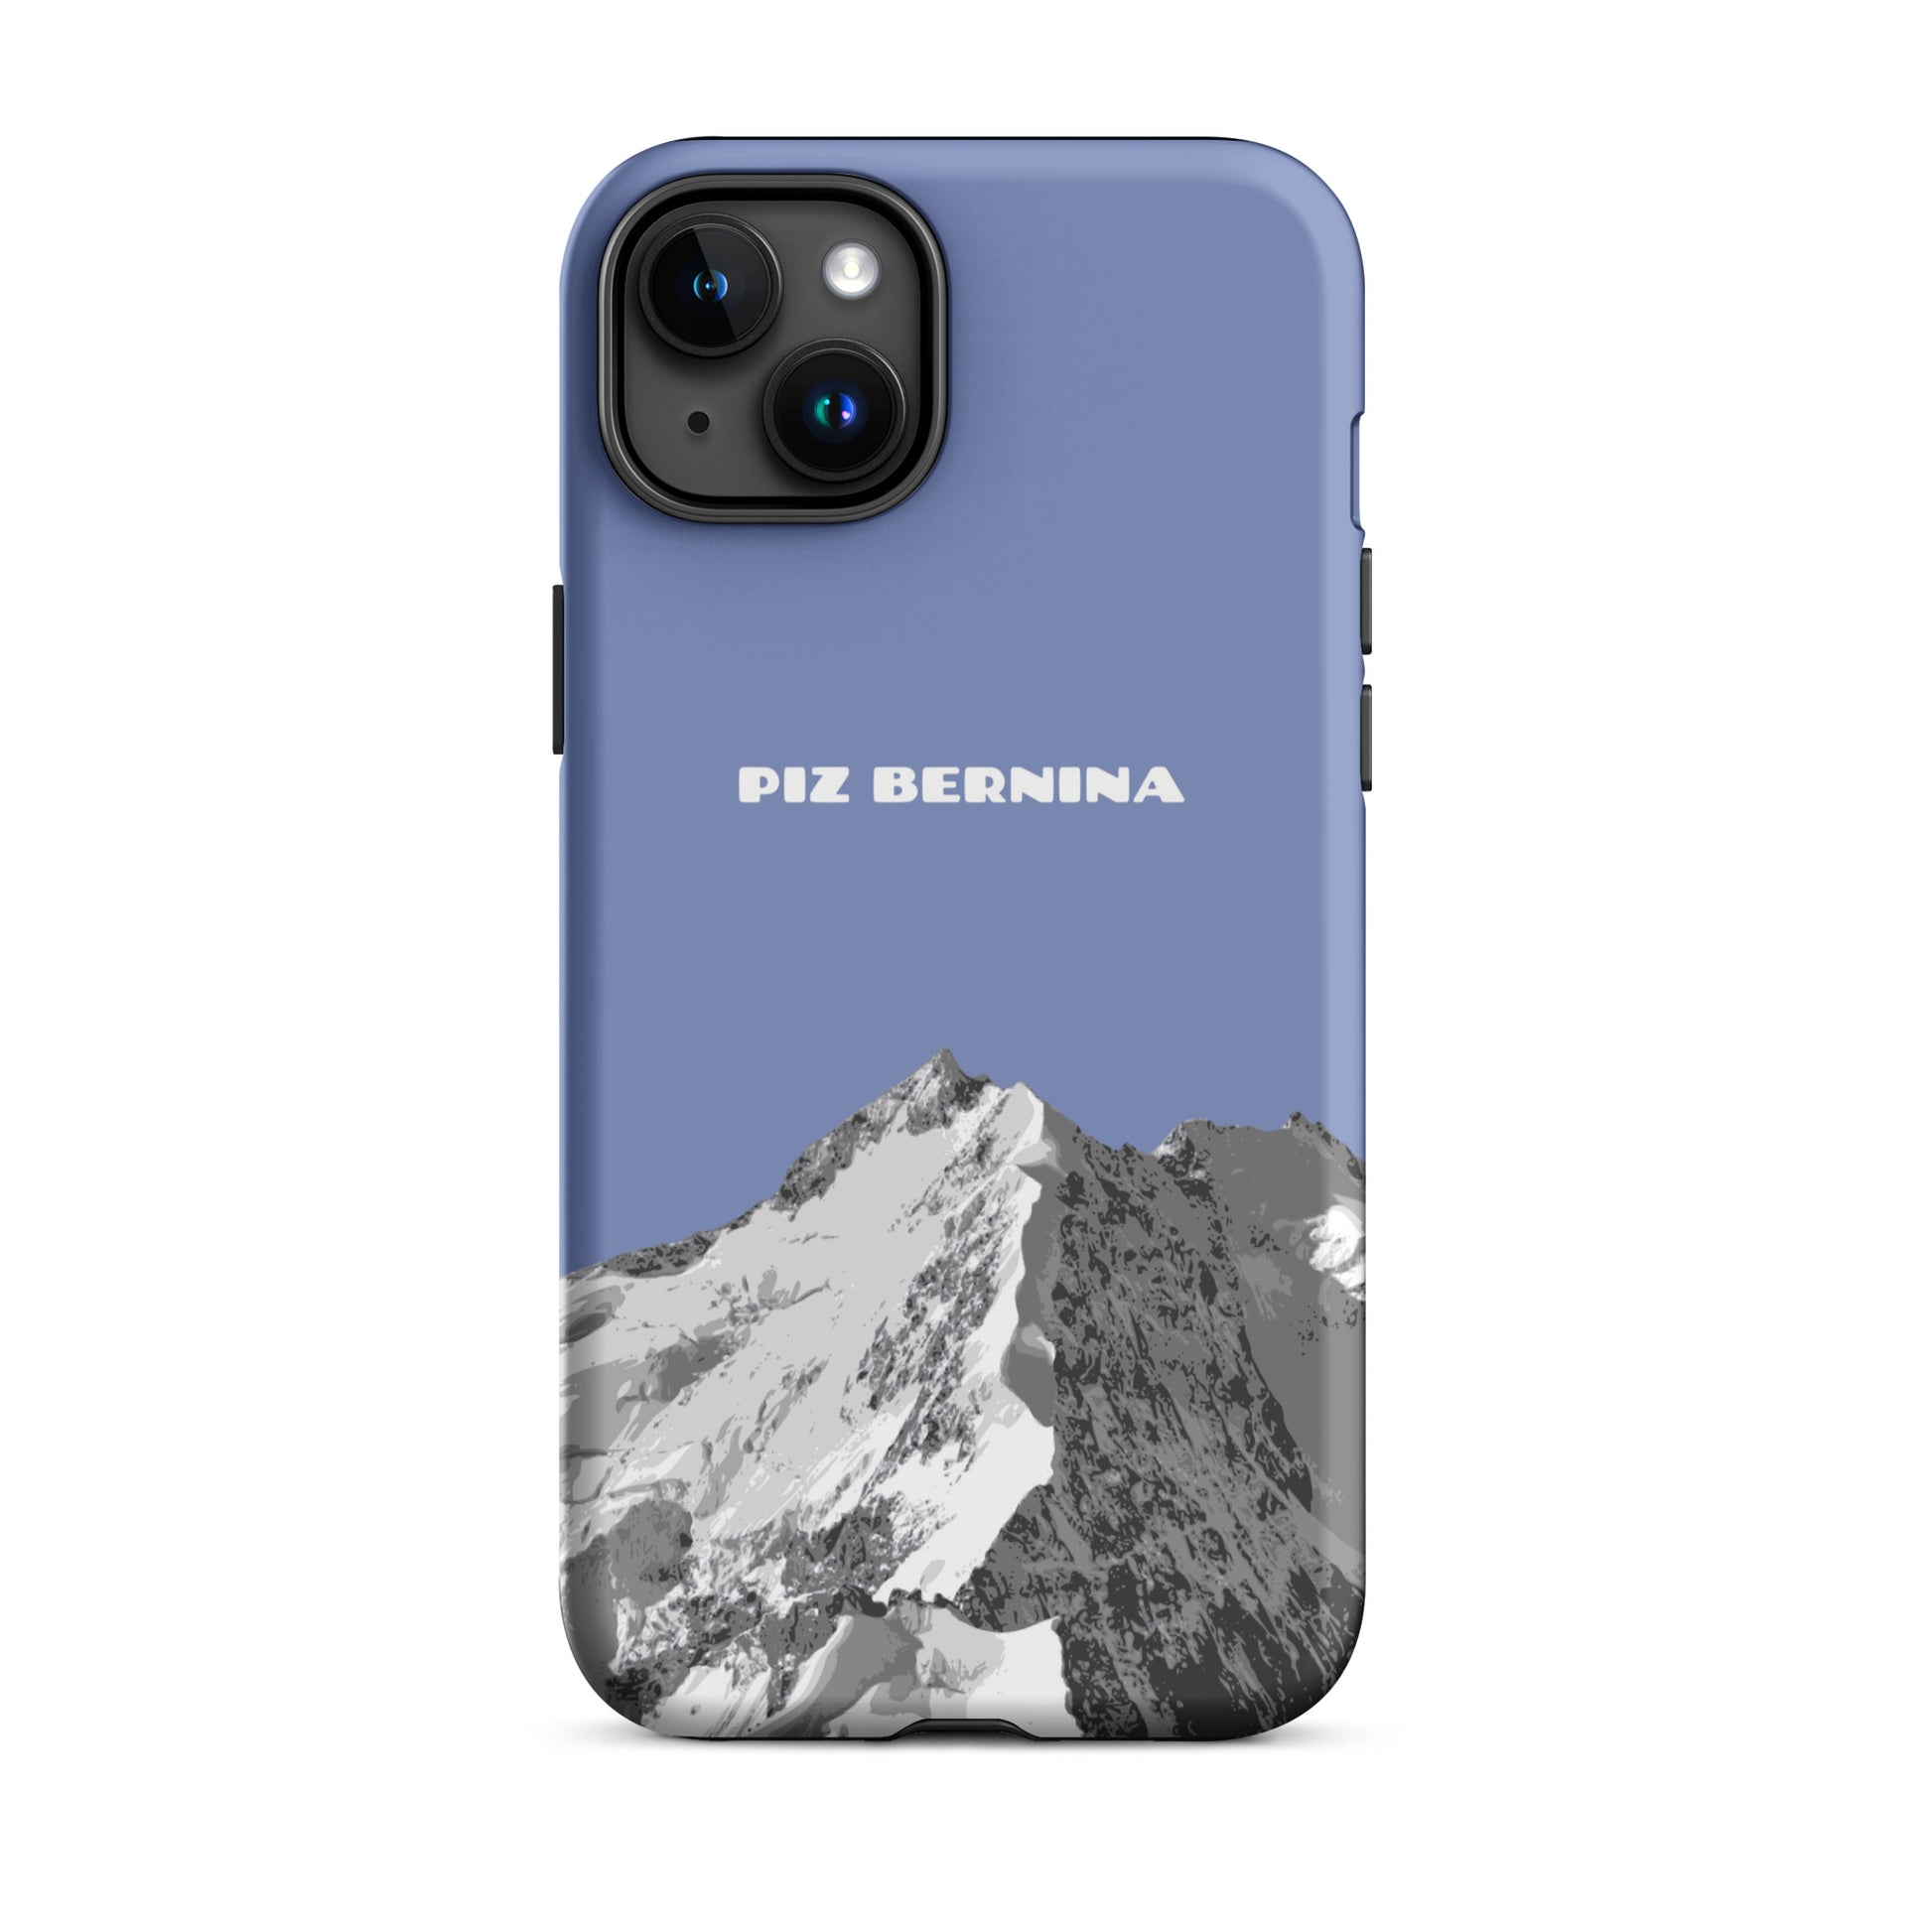 Hülle für das iPhone 15 Plus von Apple in der Farbe Pastellblau, dass den Piz Bernina in Graubünden zeigt.